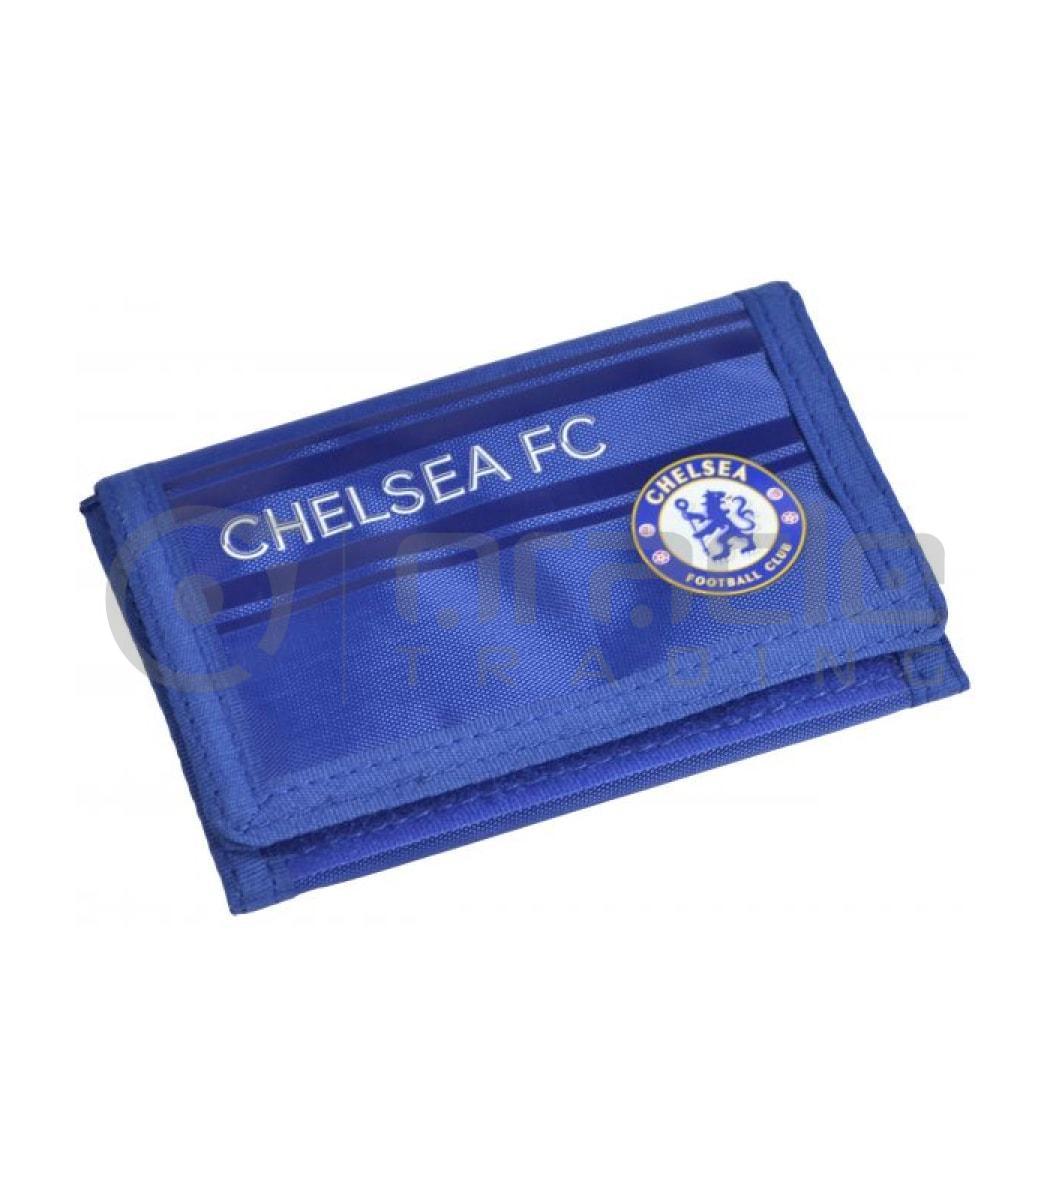 Chelsea Crest Wallet